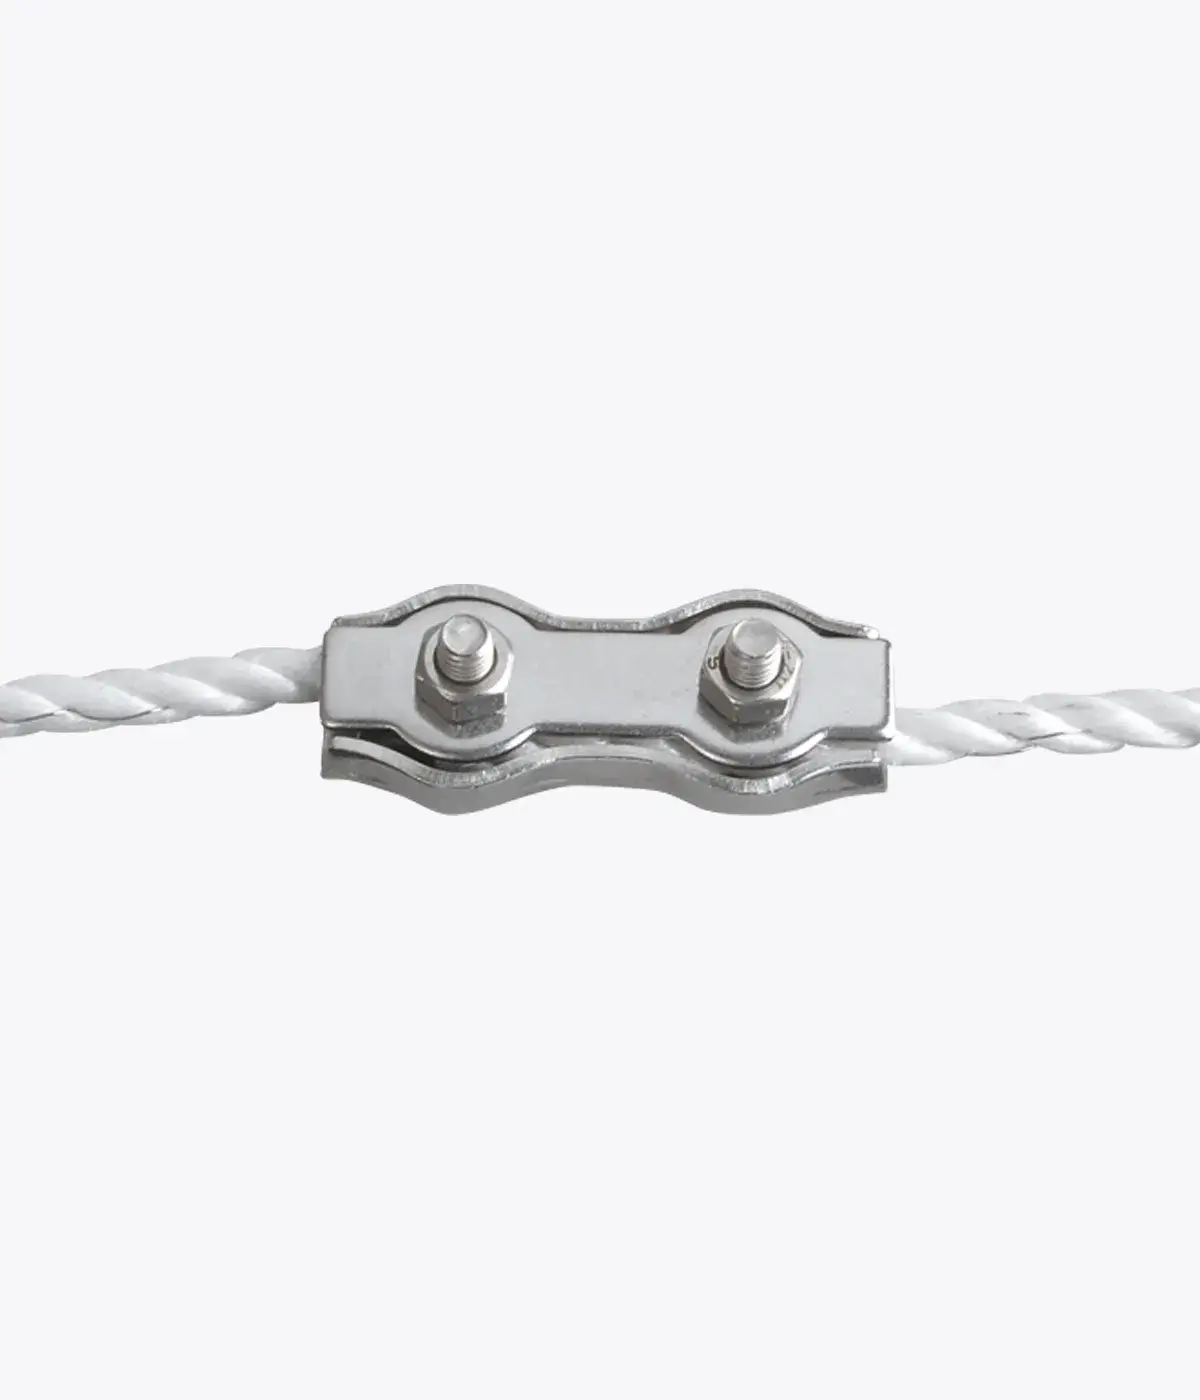 PATURA Seilverbinder verzinkt für Seile bis 6 mm